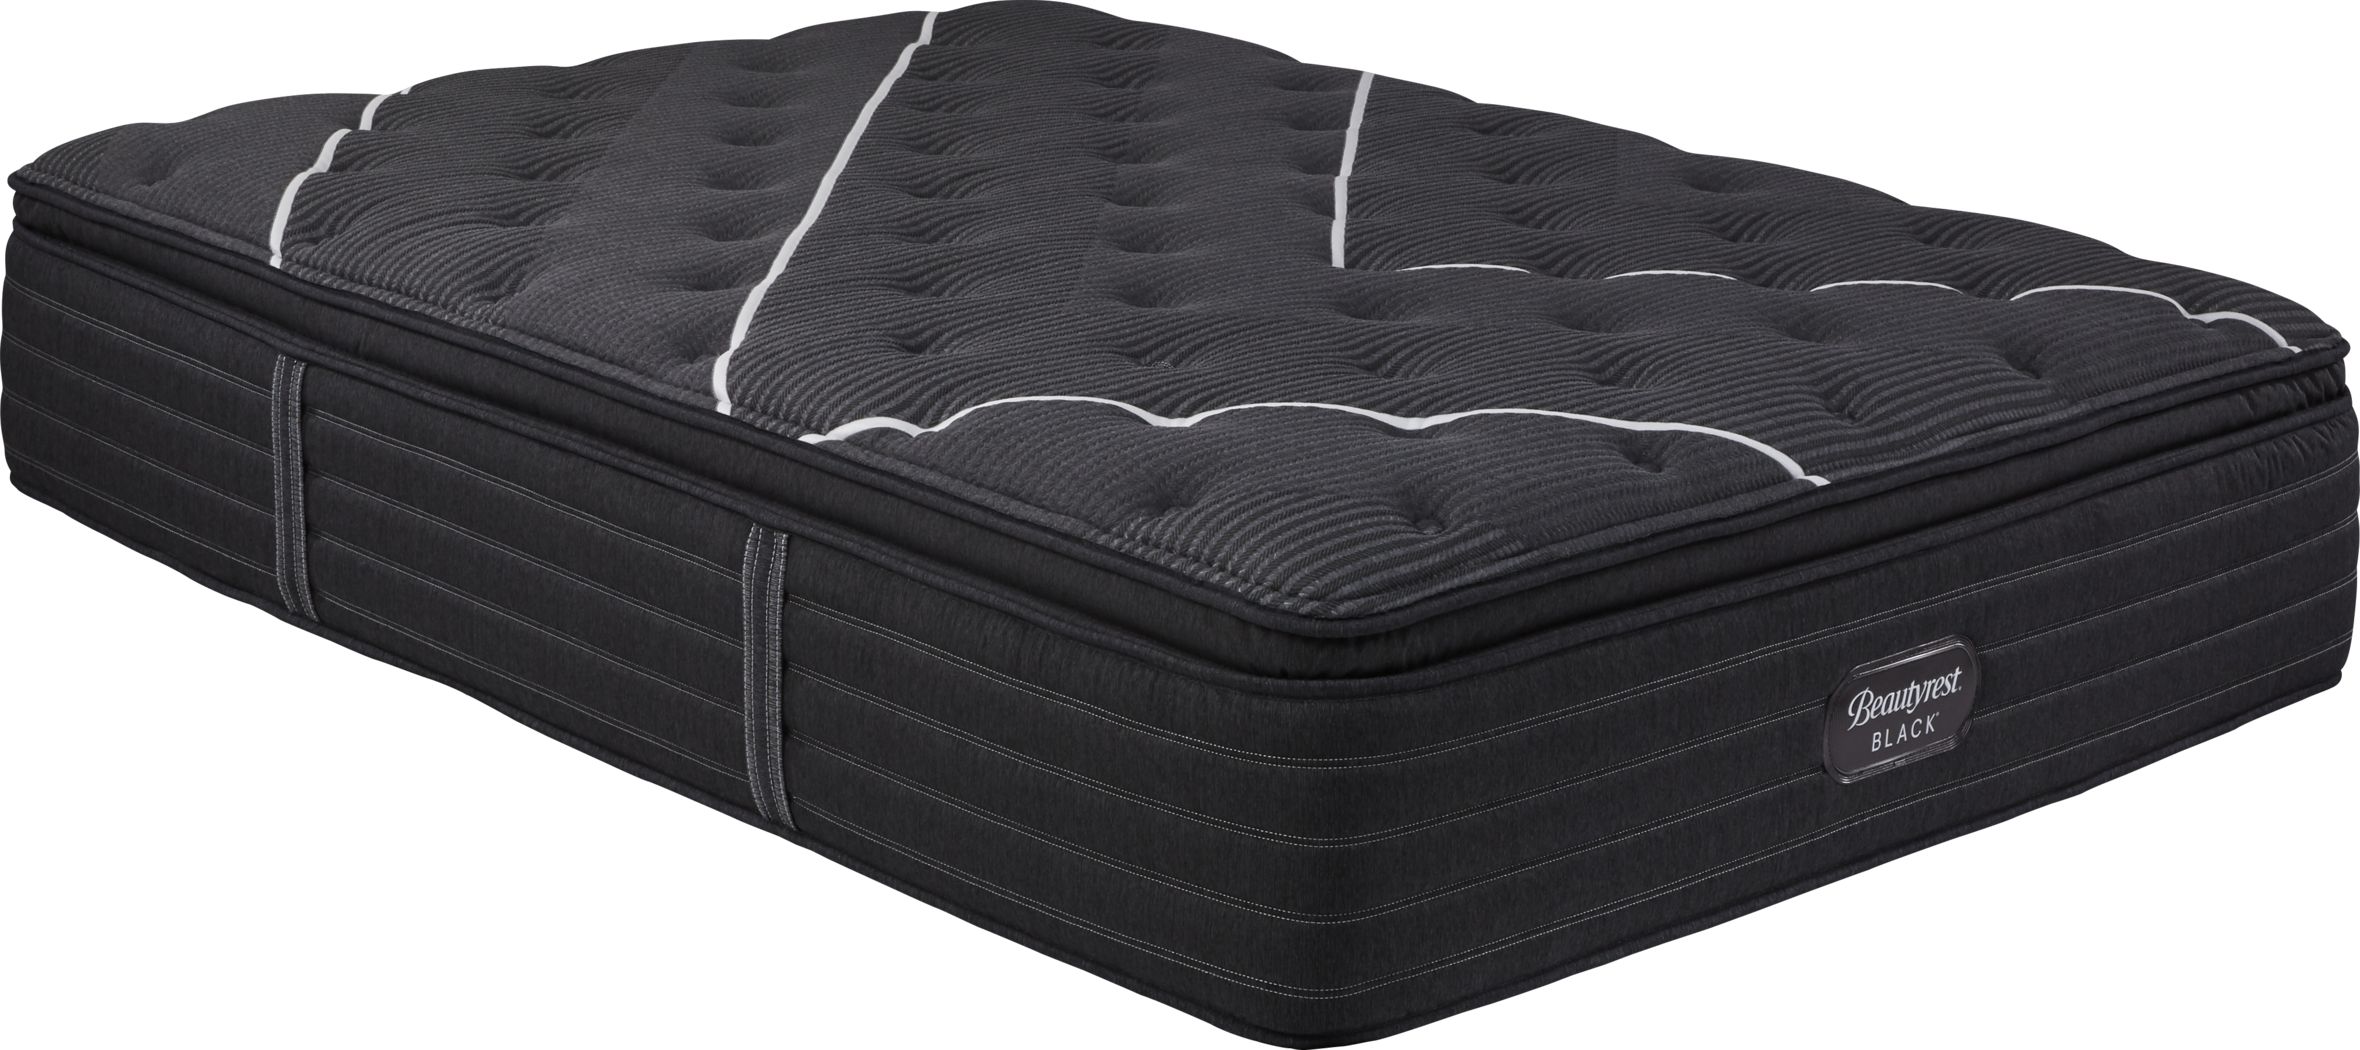 beautyrest plush king mattress